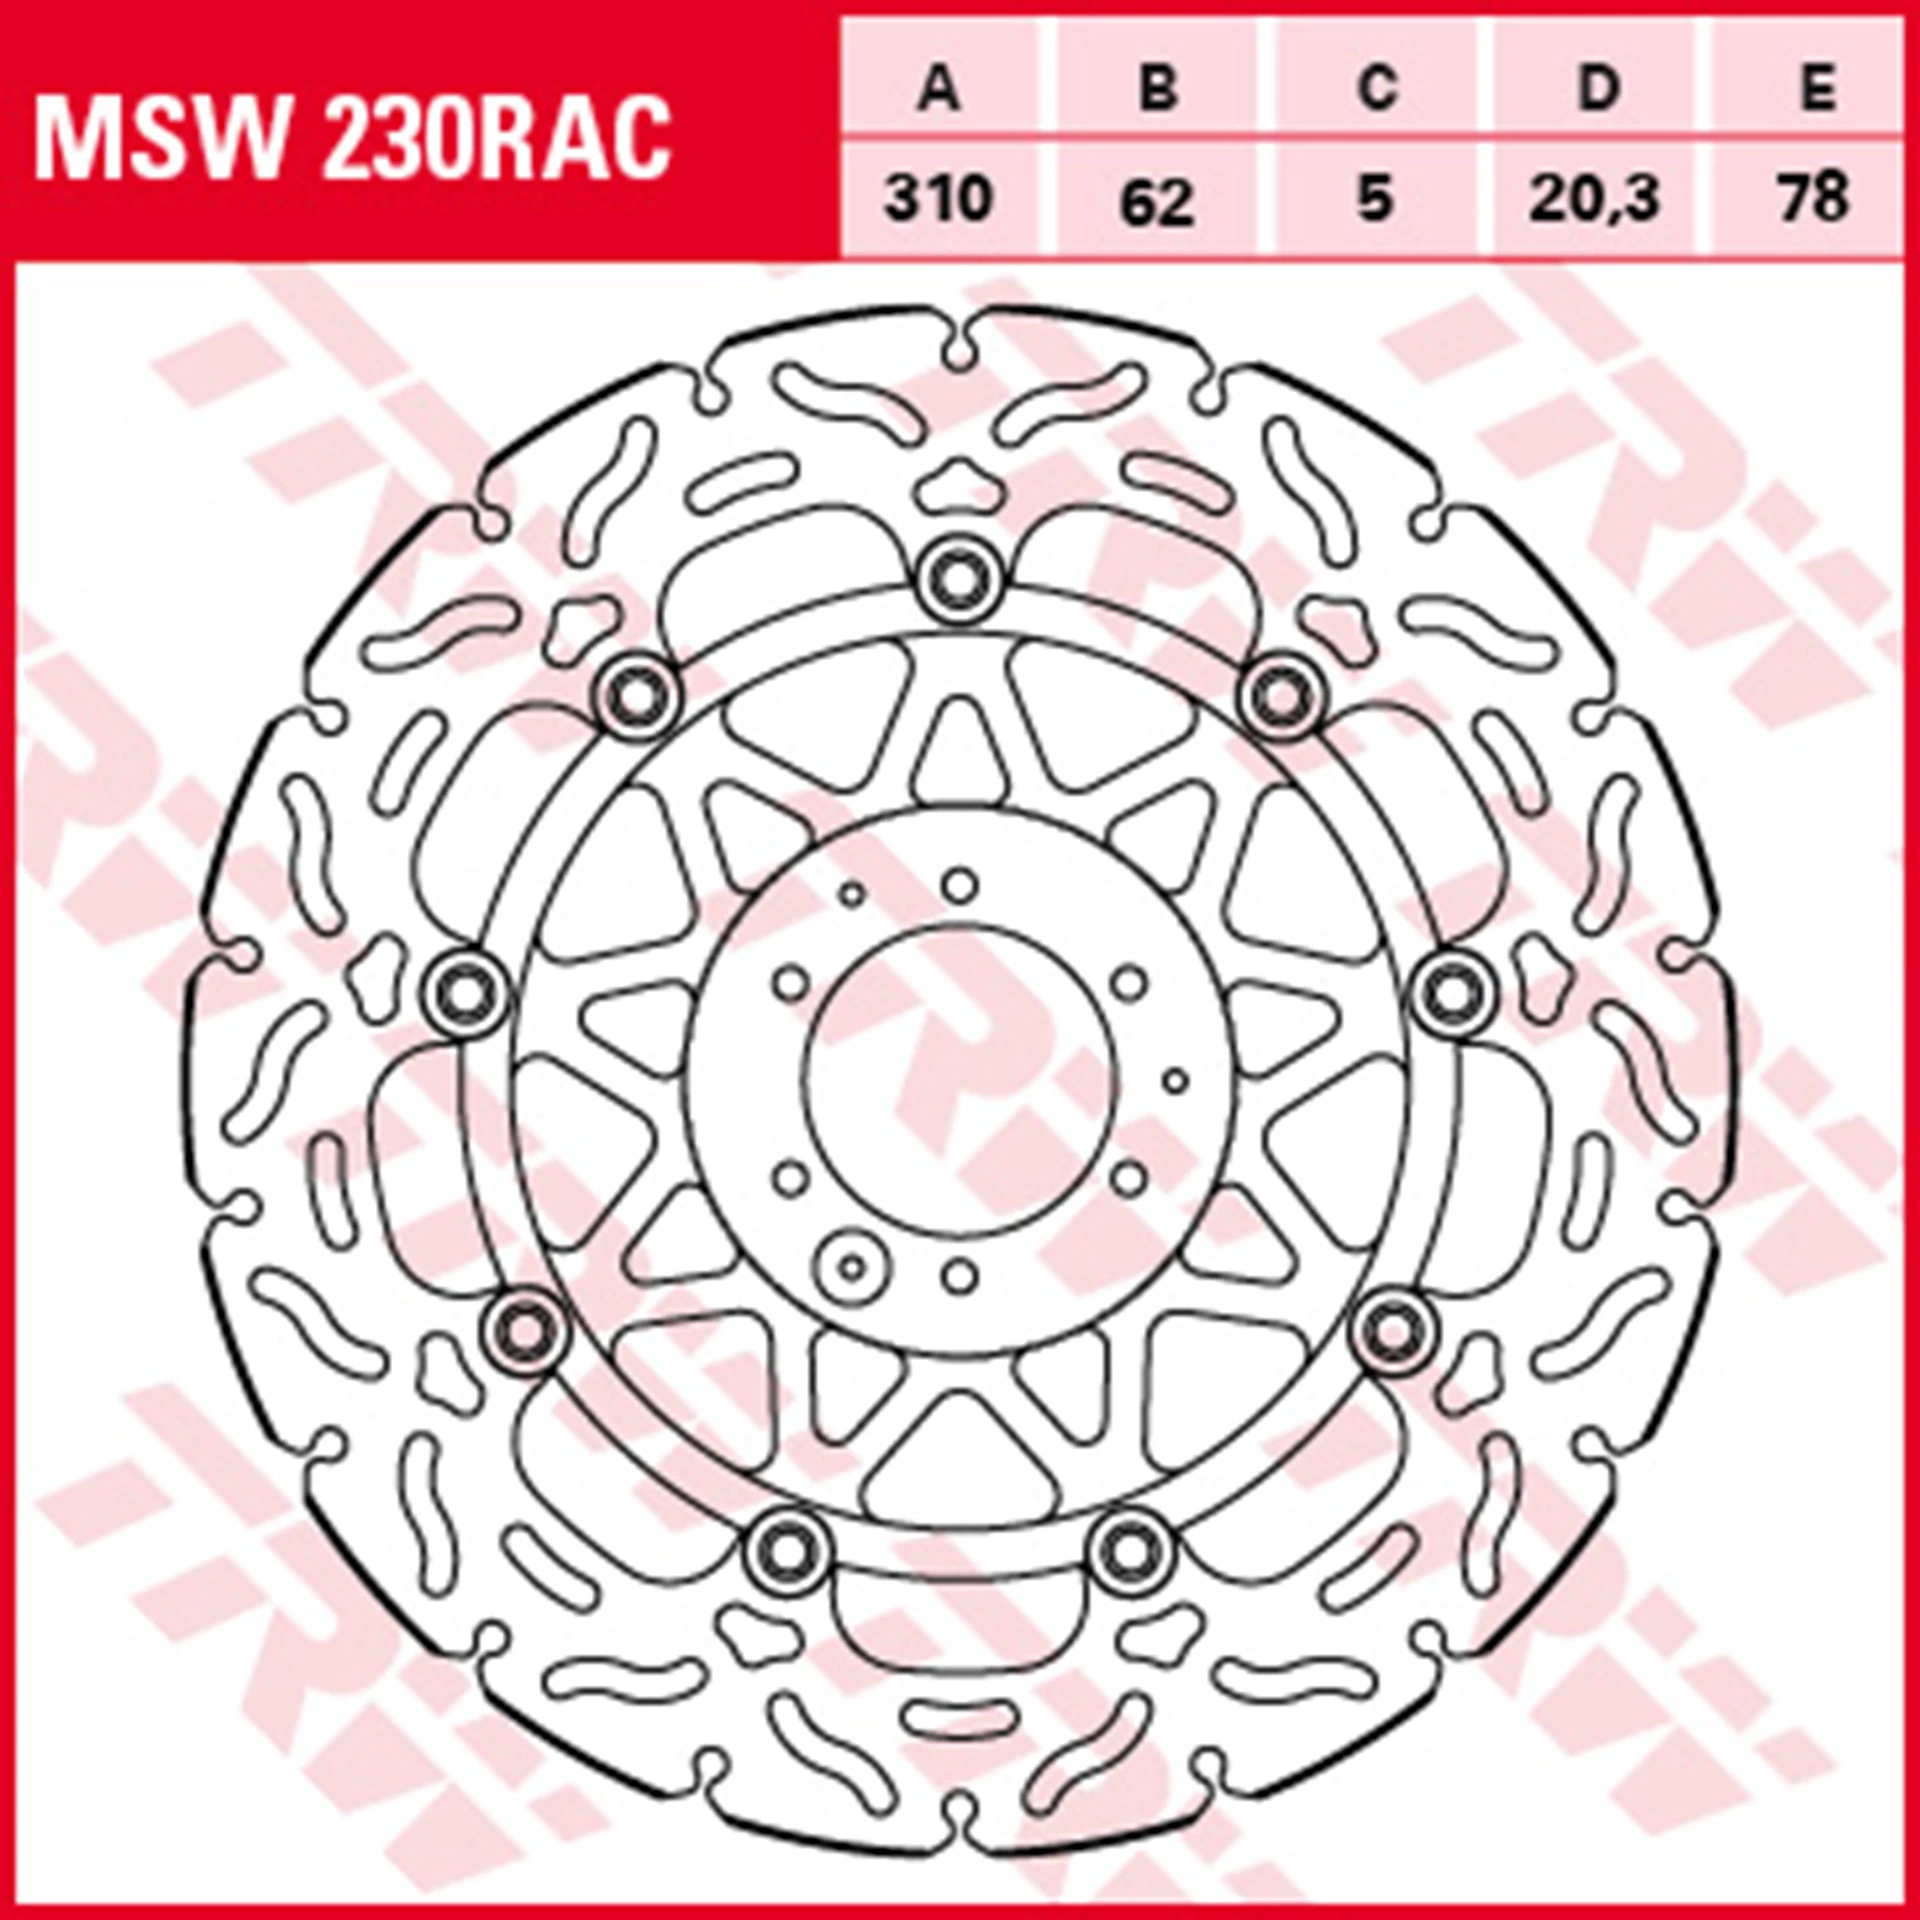 MSW230RAC